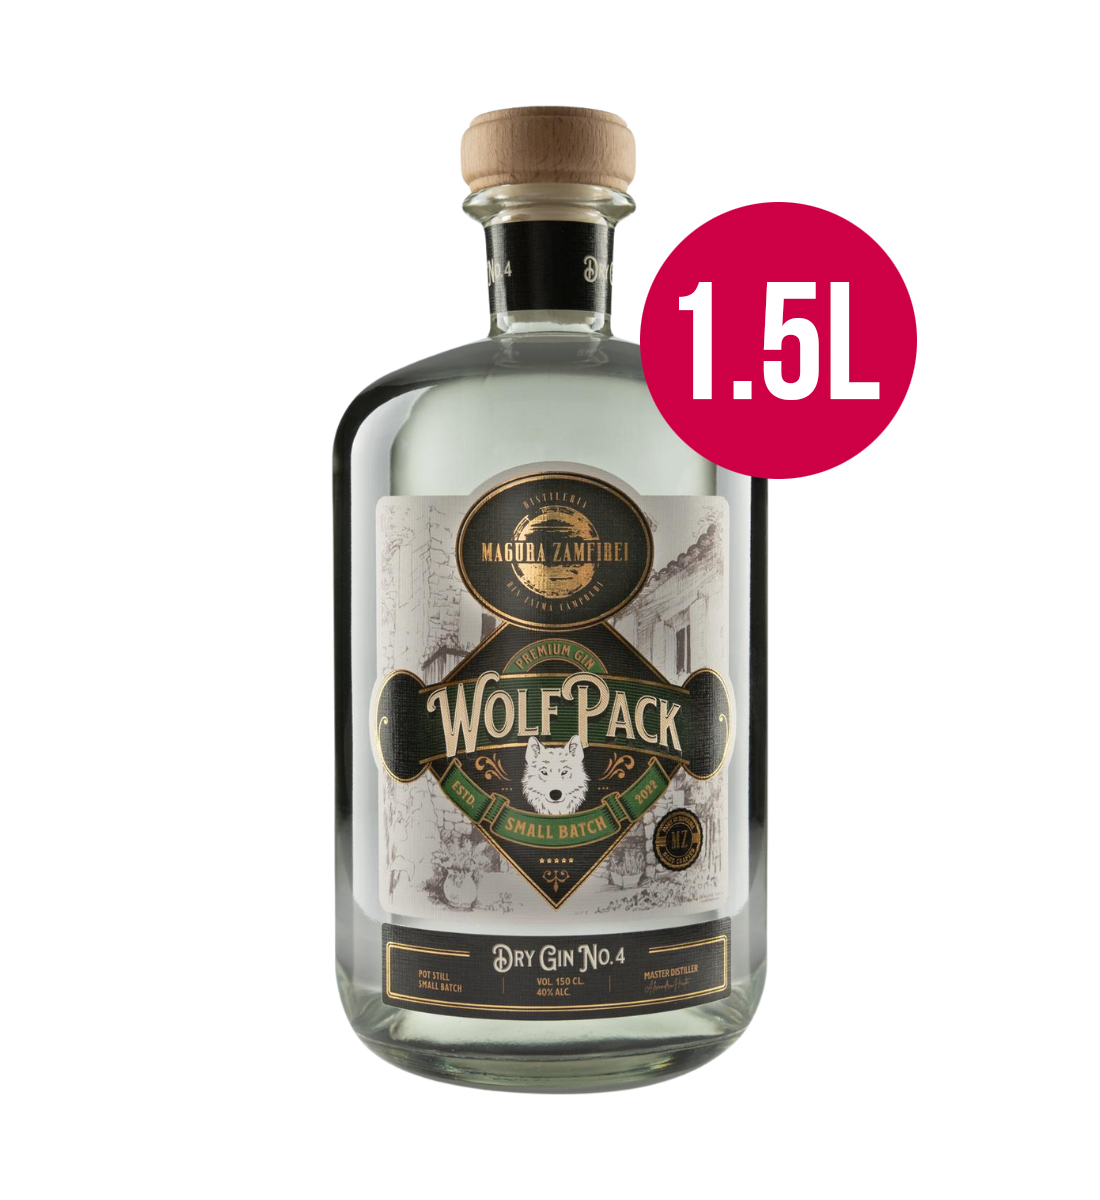 Magura Zamfirei Wolfpack Small Batch No4 Dry Gin 1.5L